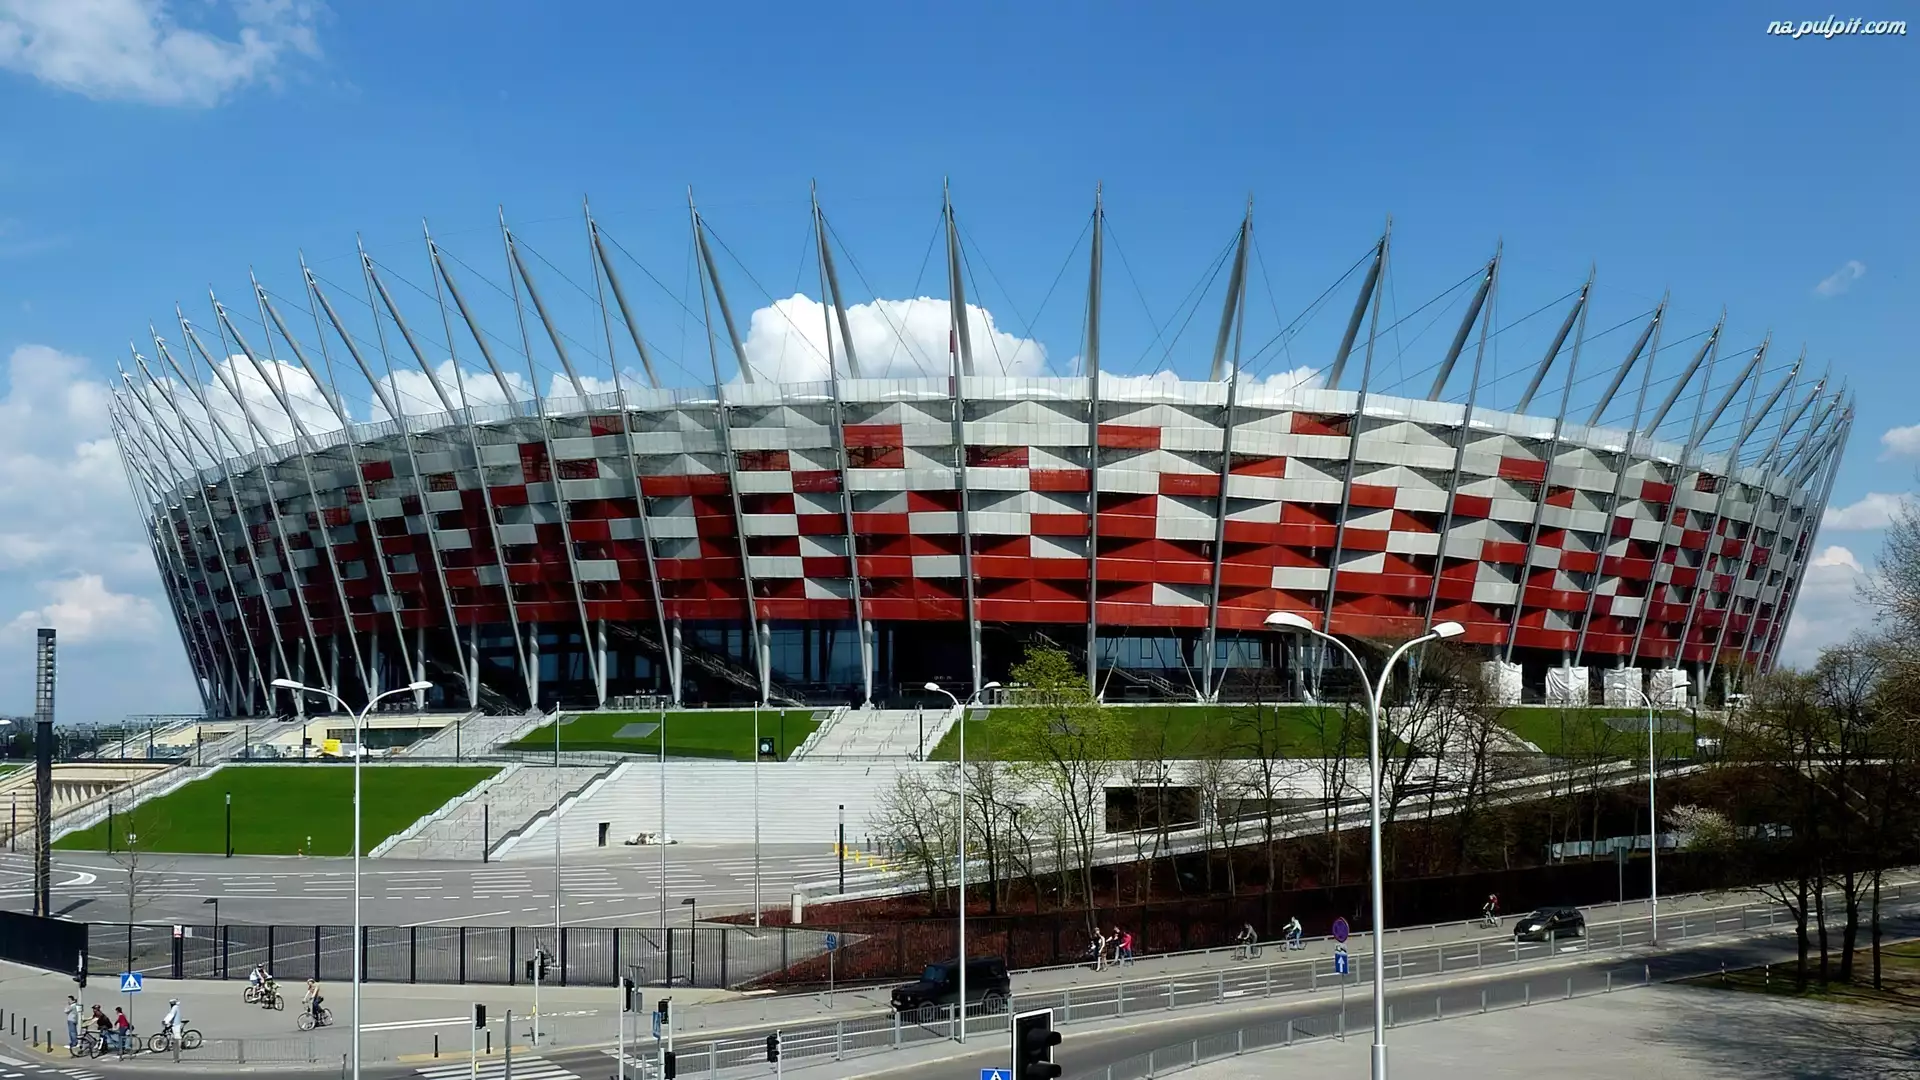 Stadion Narodowy, Polska, Warszawa